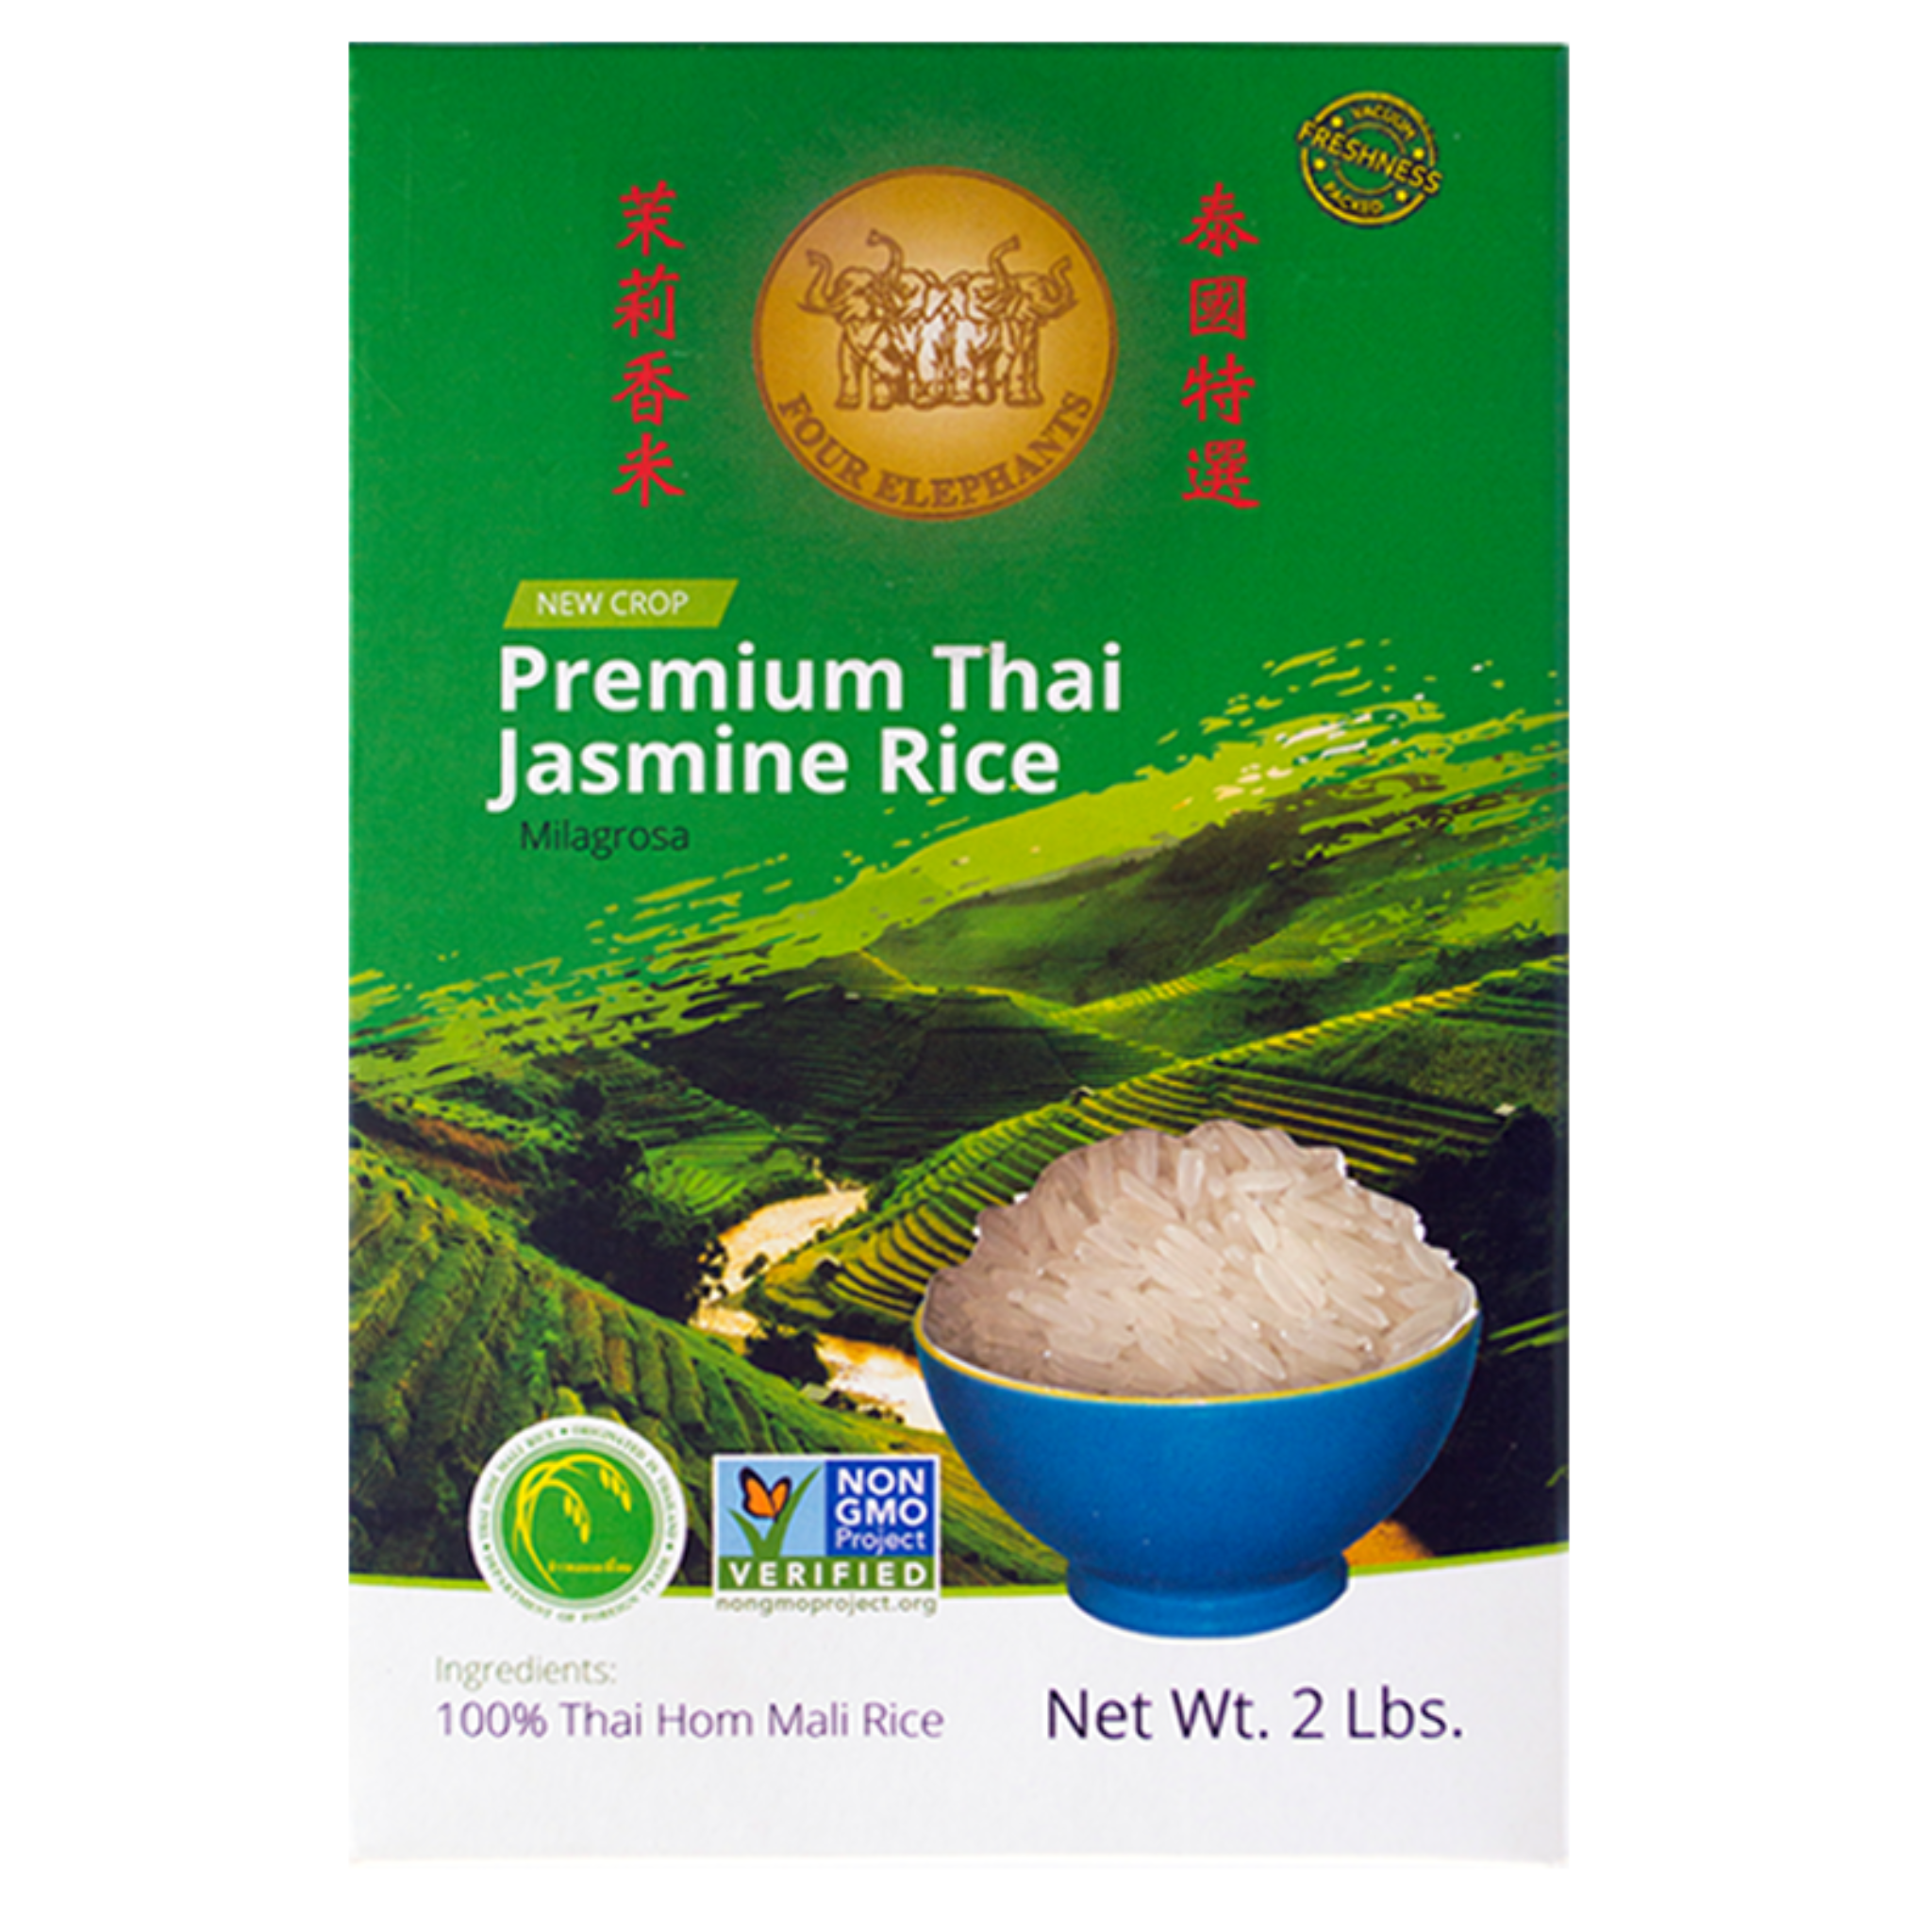 Premium Thai Jasmine Rice